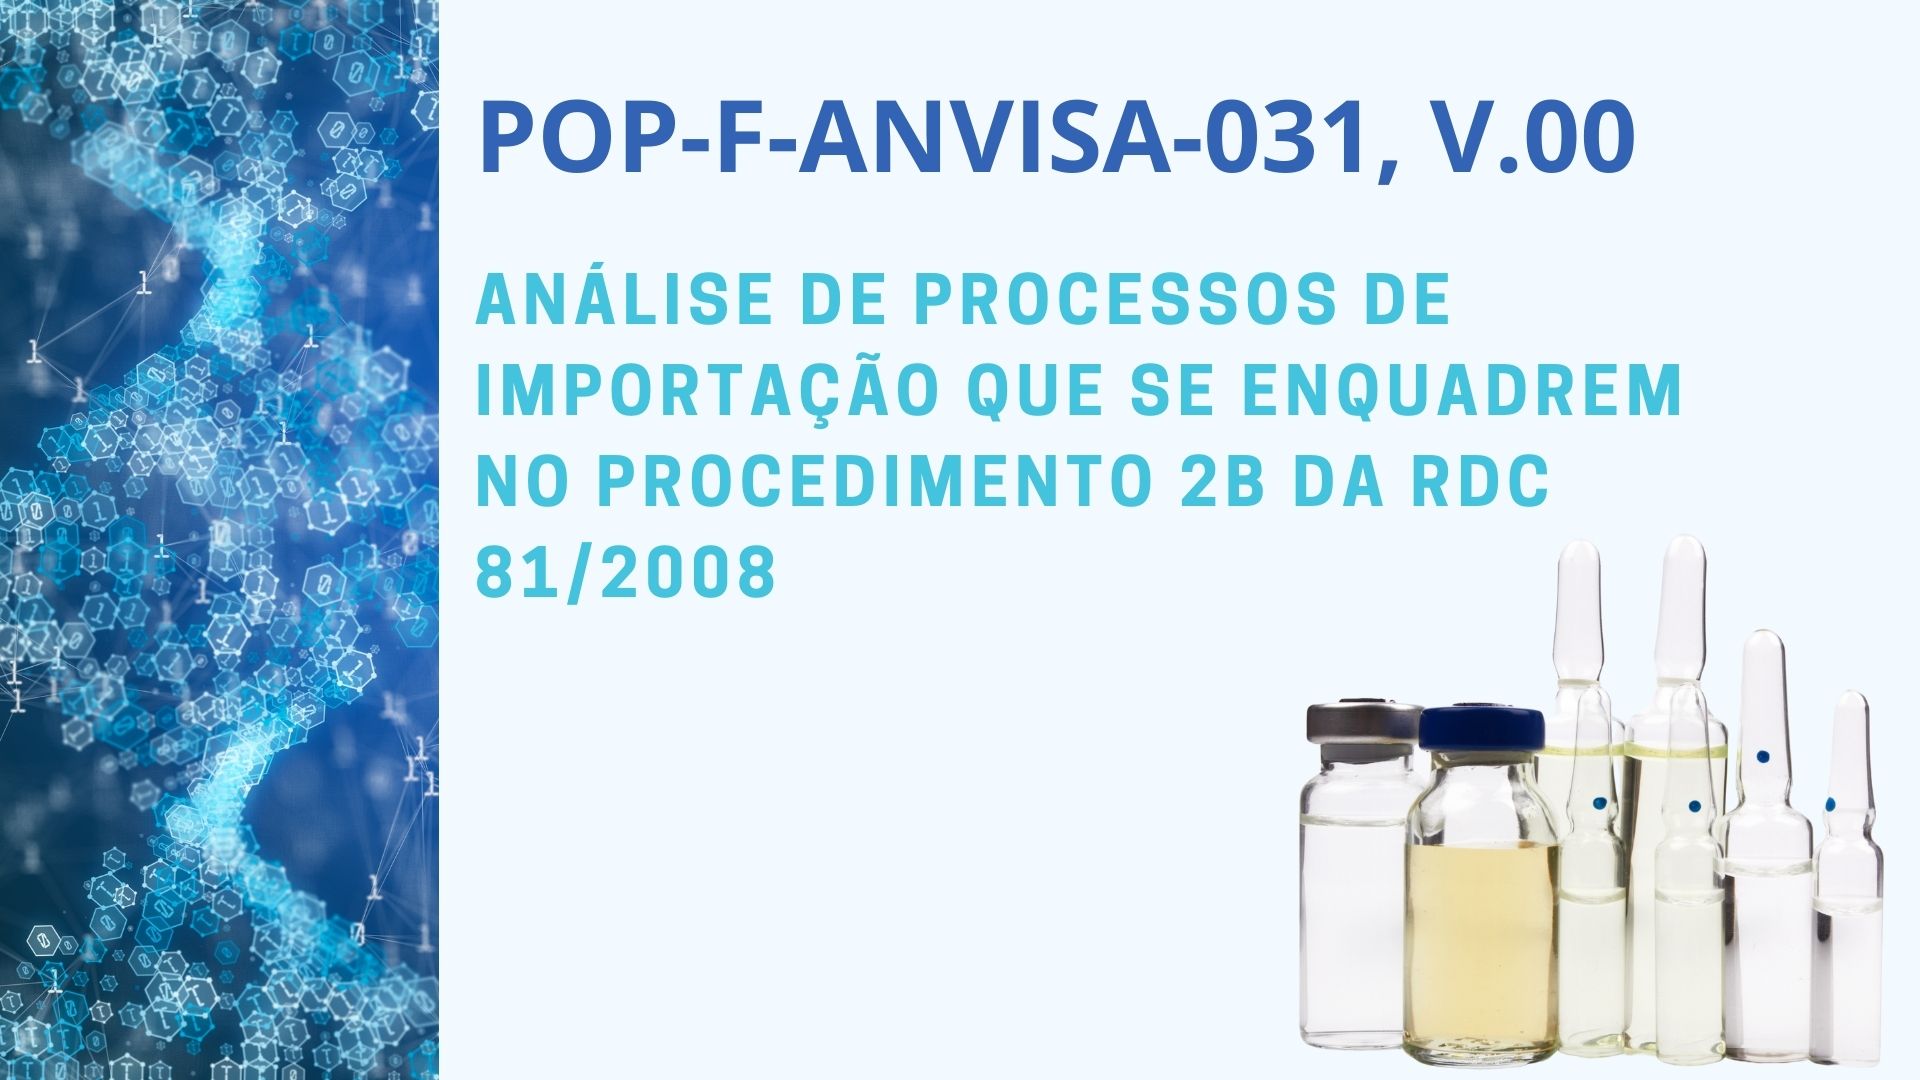 POP-F-ANVISA-031, v.00 - ANÁLISE DE PROCESSOS DE IMPORTAÇÃO QUE SE ENQUADREM NO PROCEDIMENTO 2B DA RDC 81/2008